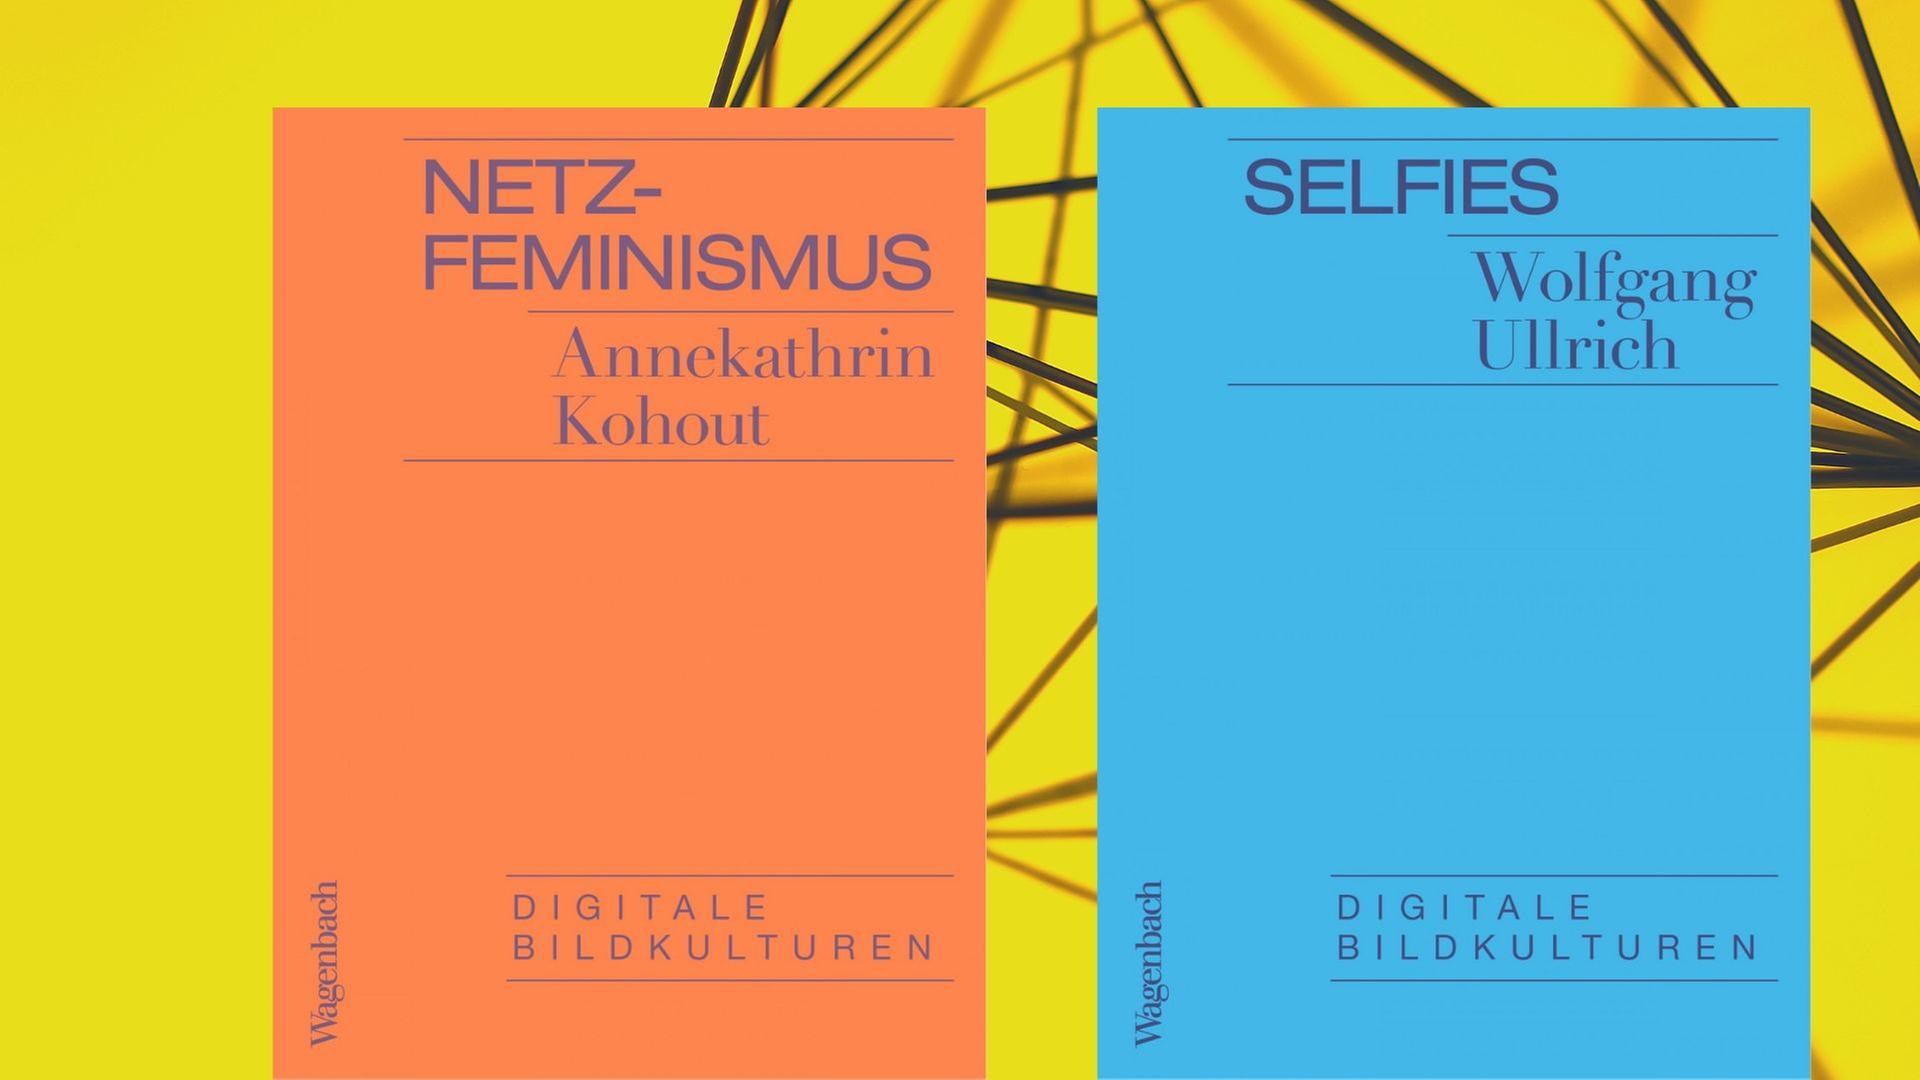 Buchcover der Reihe „Digitale Bildkulturen“, links: "Netz-Feminismus", rechts: "Selfies"